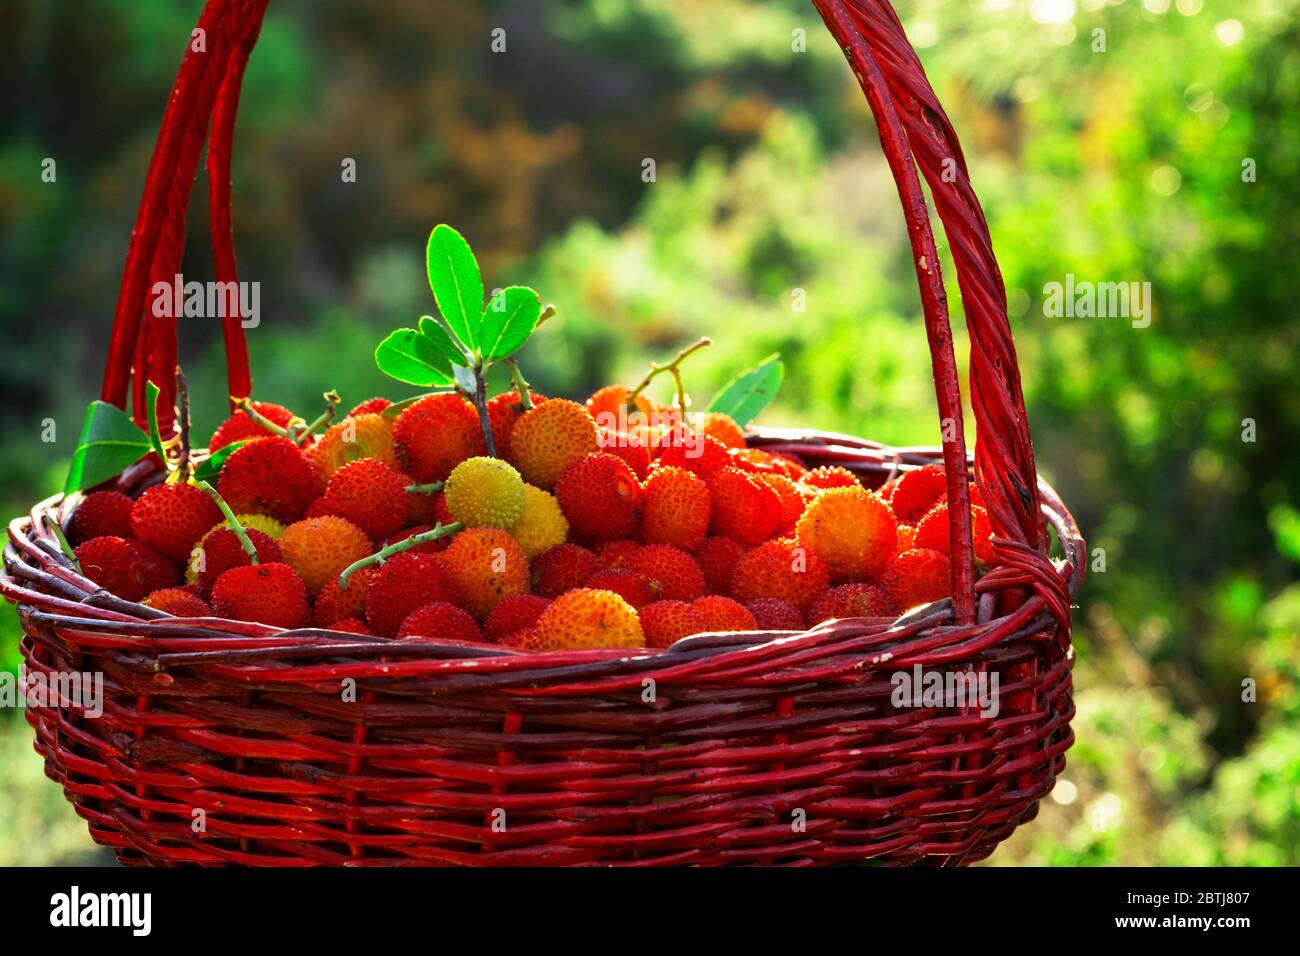 Gros plan d'un panier rempli de fraises sauvages sur un fond vert. Banque D'Images